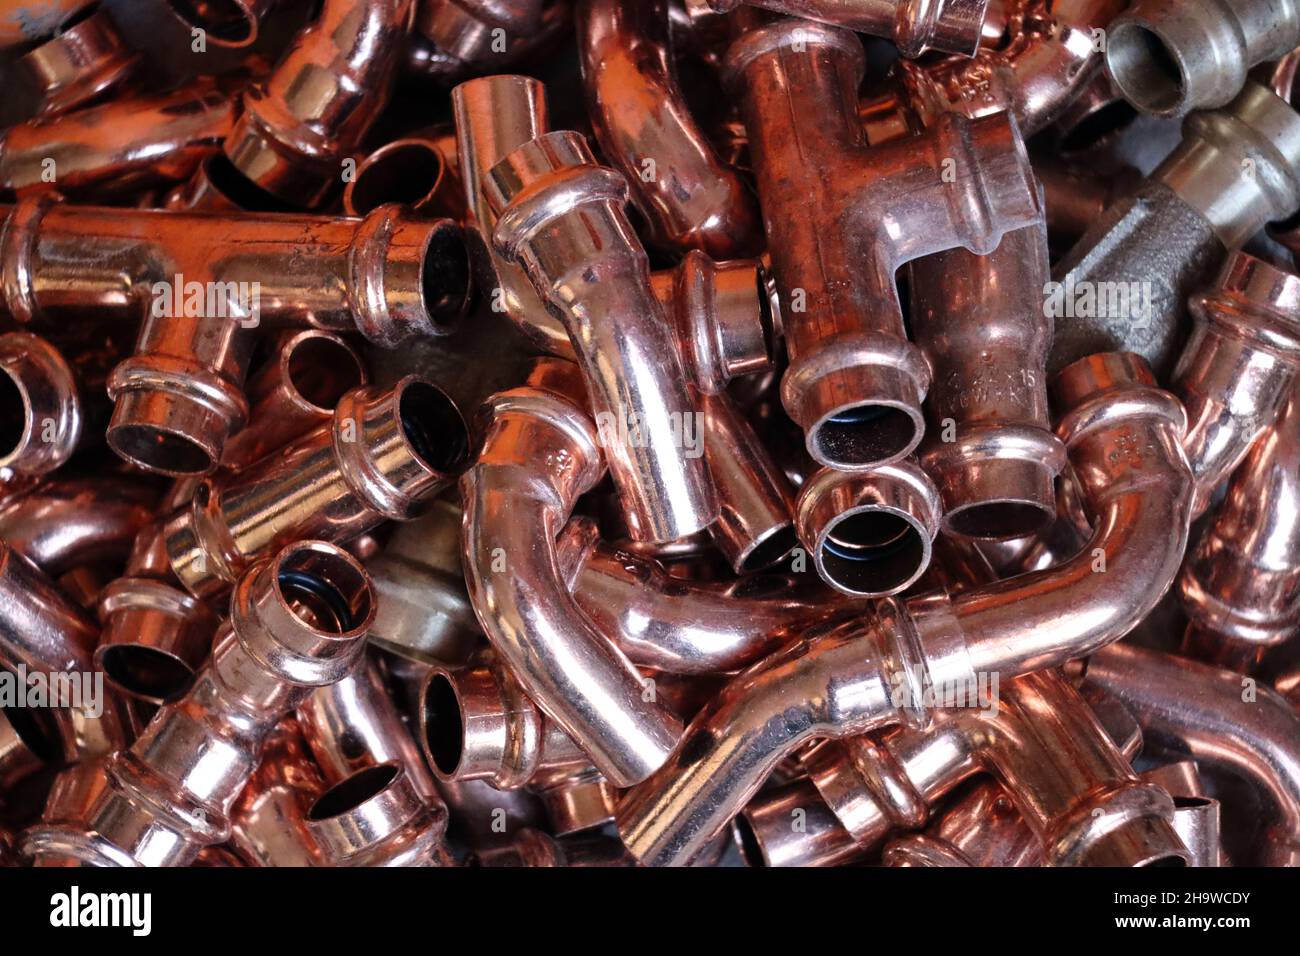 Heizungsrohre aus Kupfer - diverse Kleinteile Stock Photo